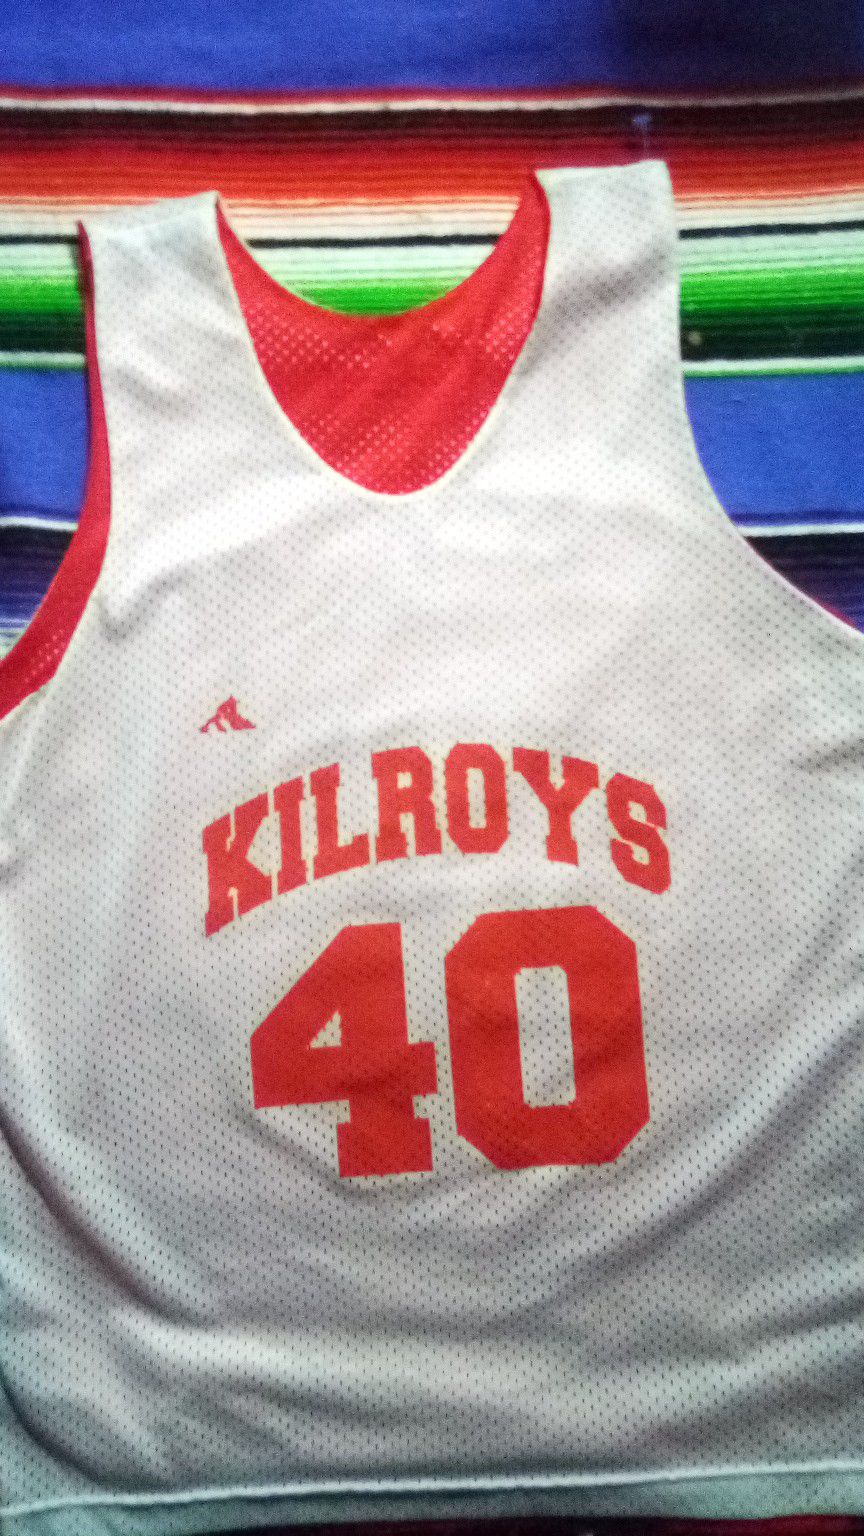 Killroys baakball vintage style jersey